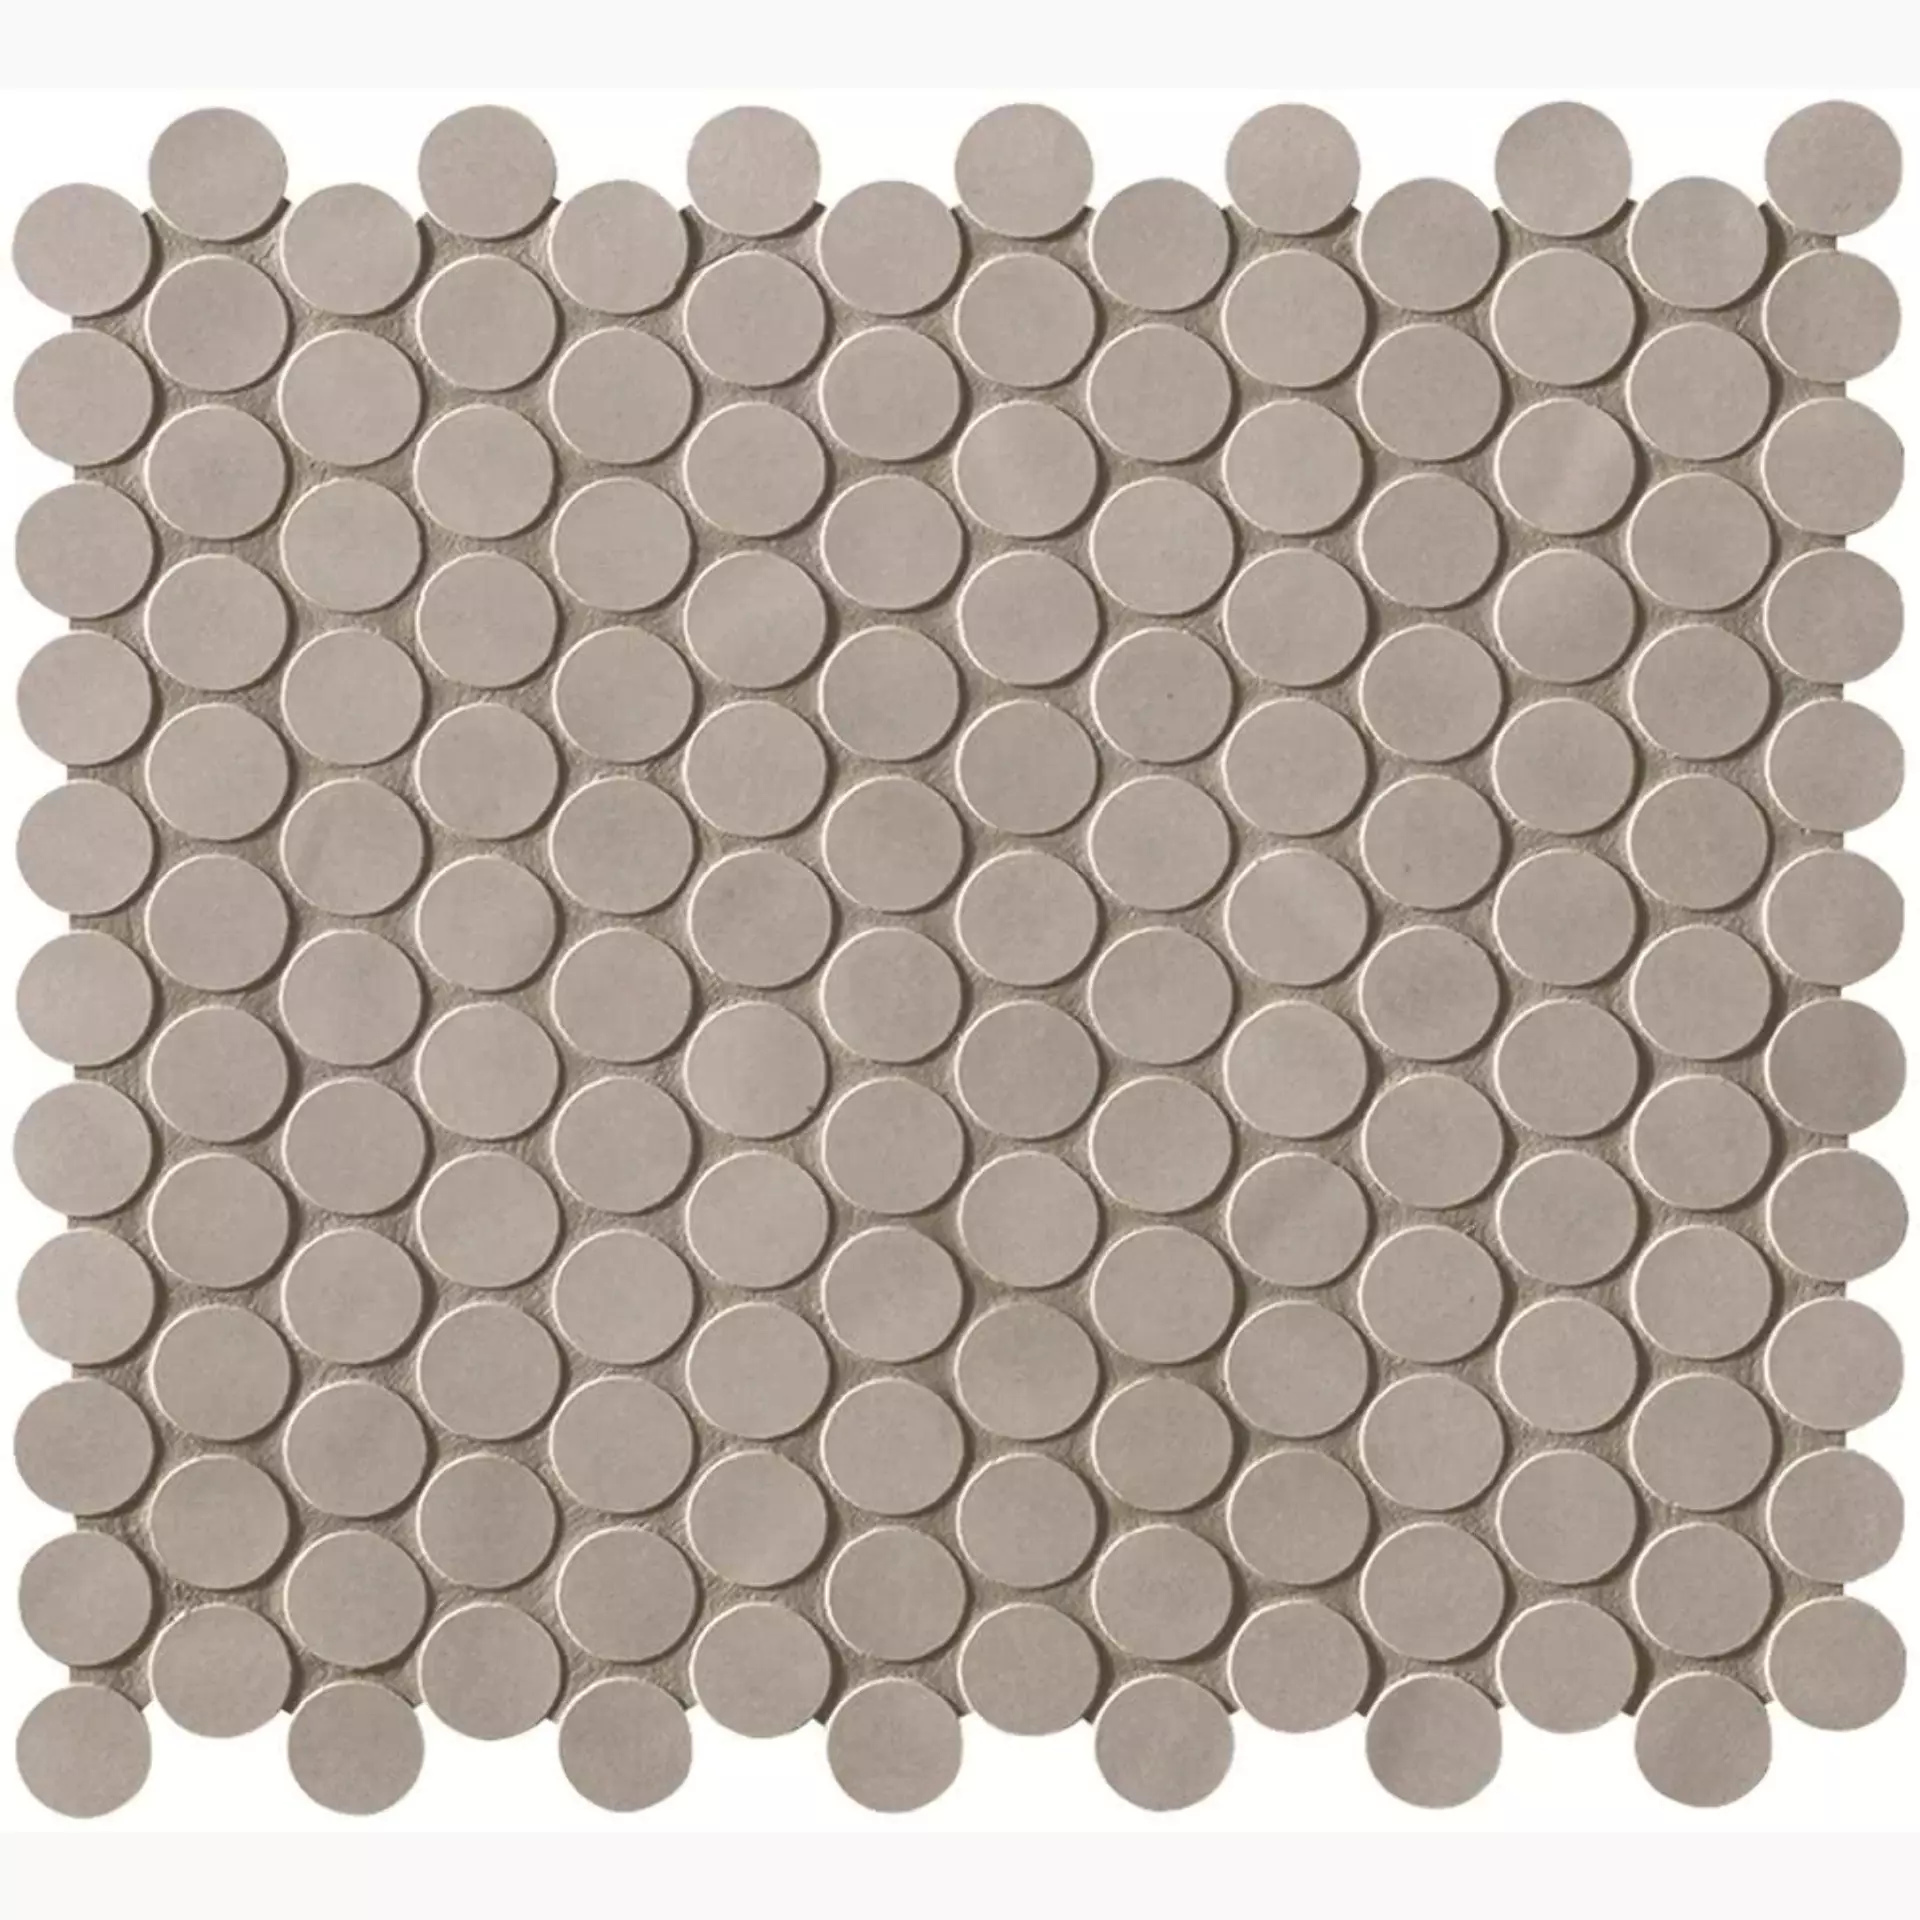 FAP Boston Cemento Matt Mosaic Round fK5V 29,5x35cm